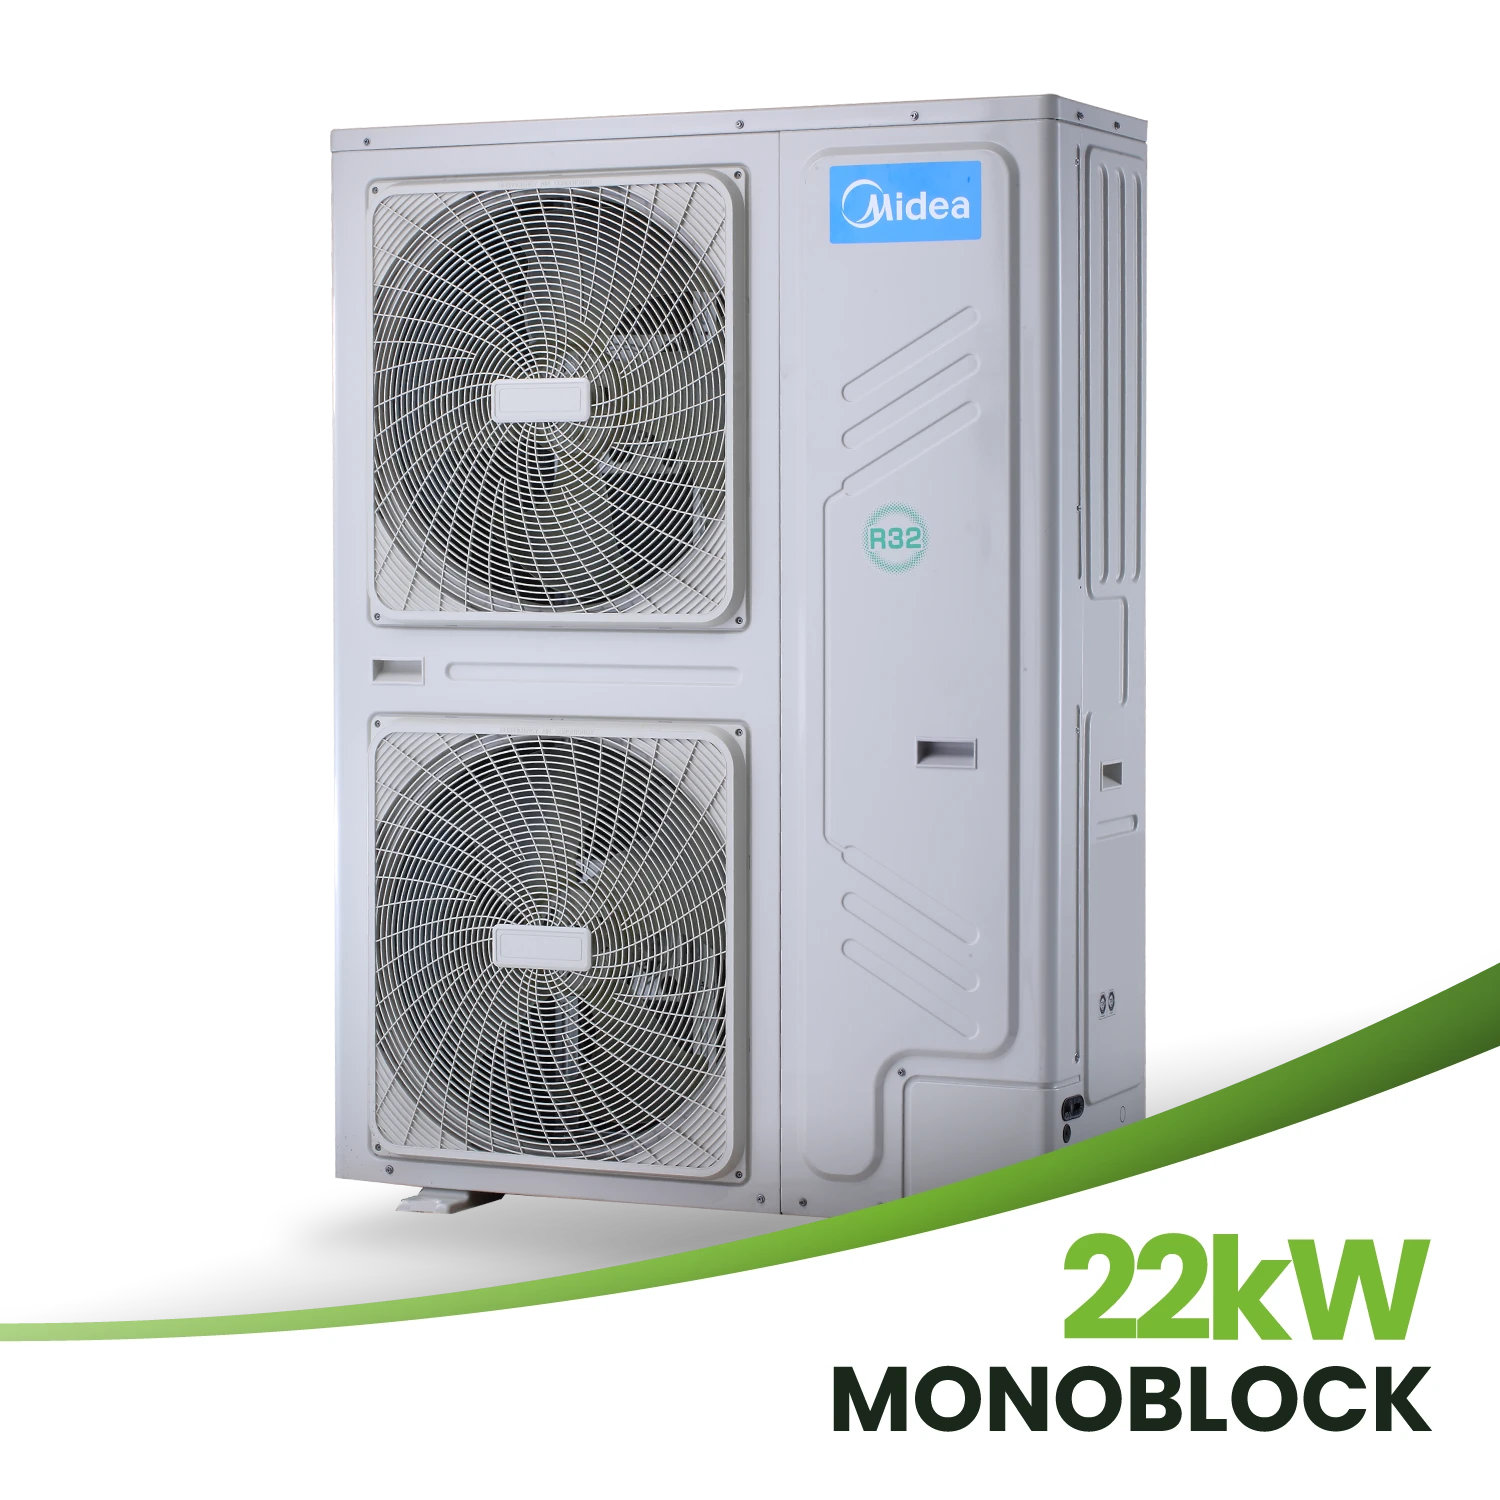 Midea 22 kW Monoblock Wärmepumpe MHC-V22W/D2RN8-B